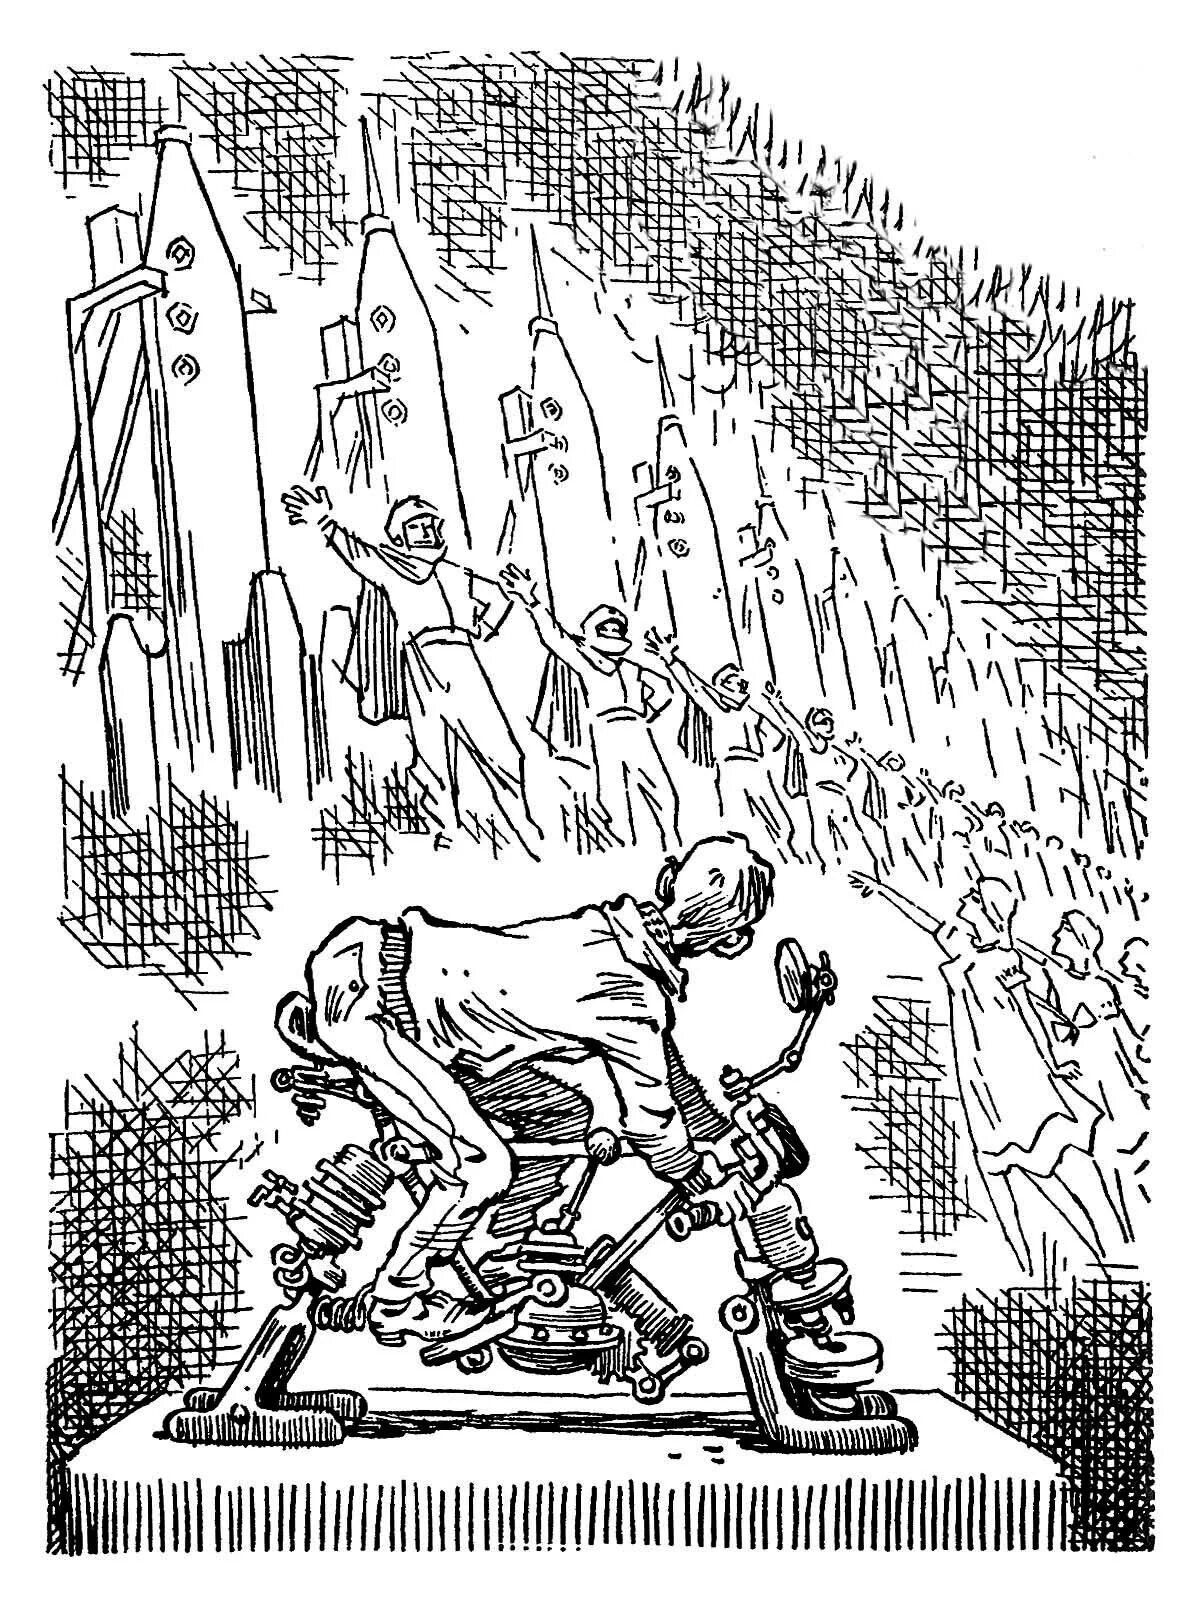 Иллюстрации Мигунов братья Стругацкие. 1965 Стругацкие иллюстрации Мигунов. Библиотека стругацких